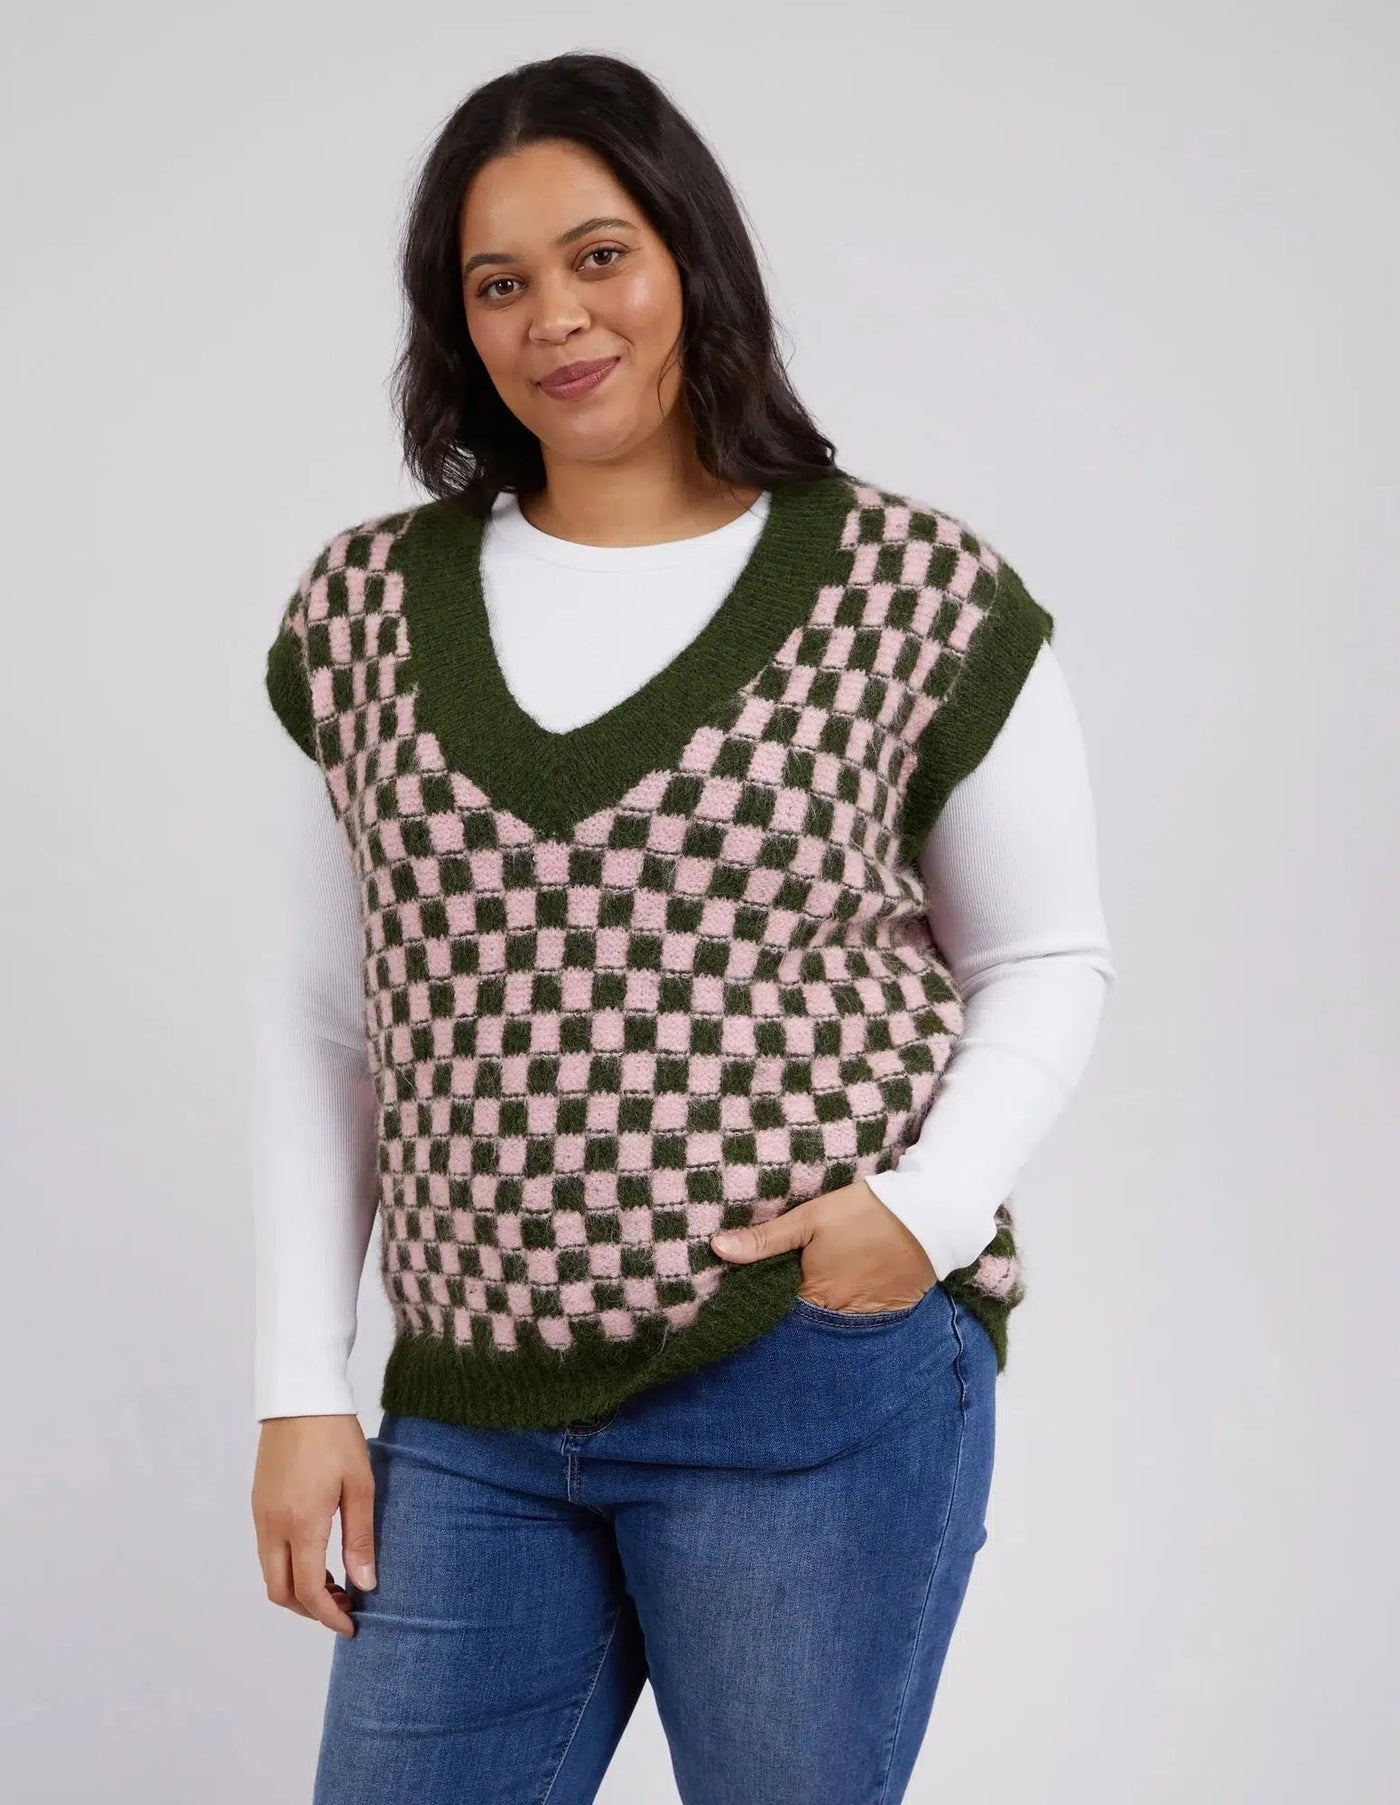 Aspen Knit Vest - Clover/Pale Pink-Elm Lifestyle-Lima & Co